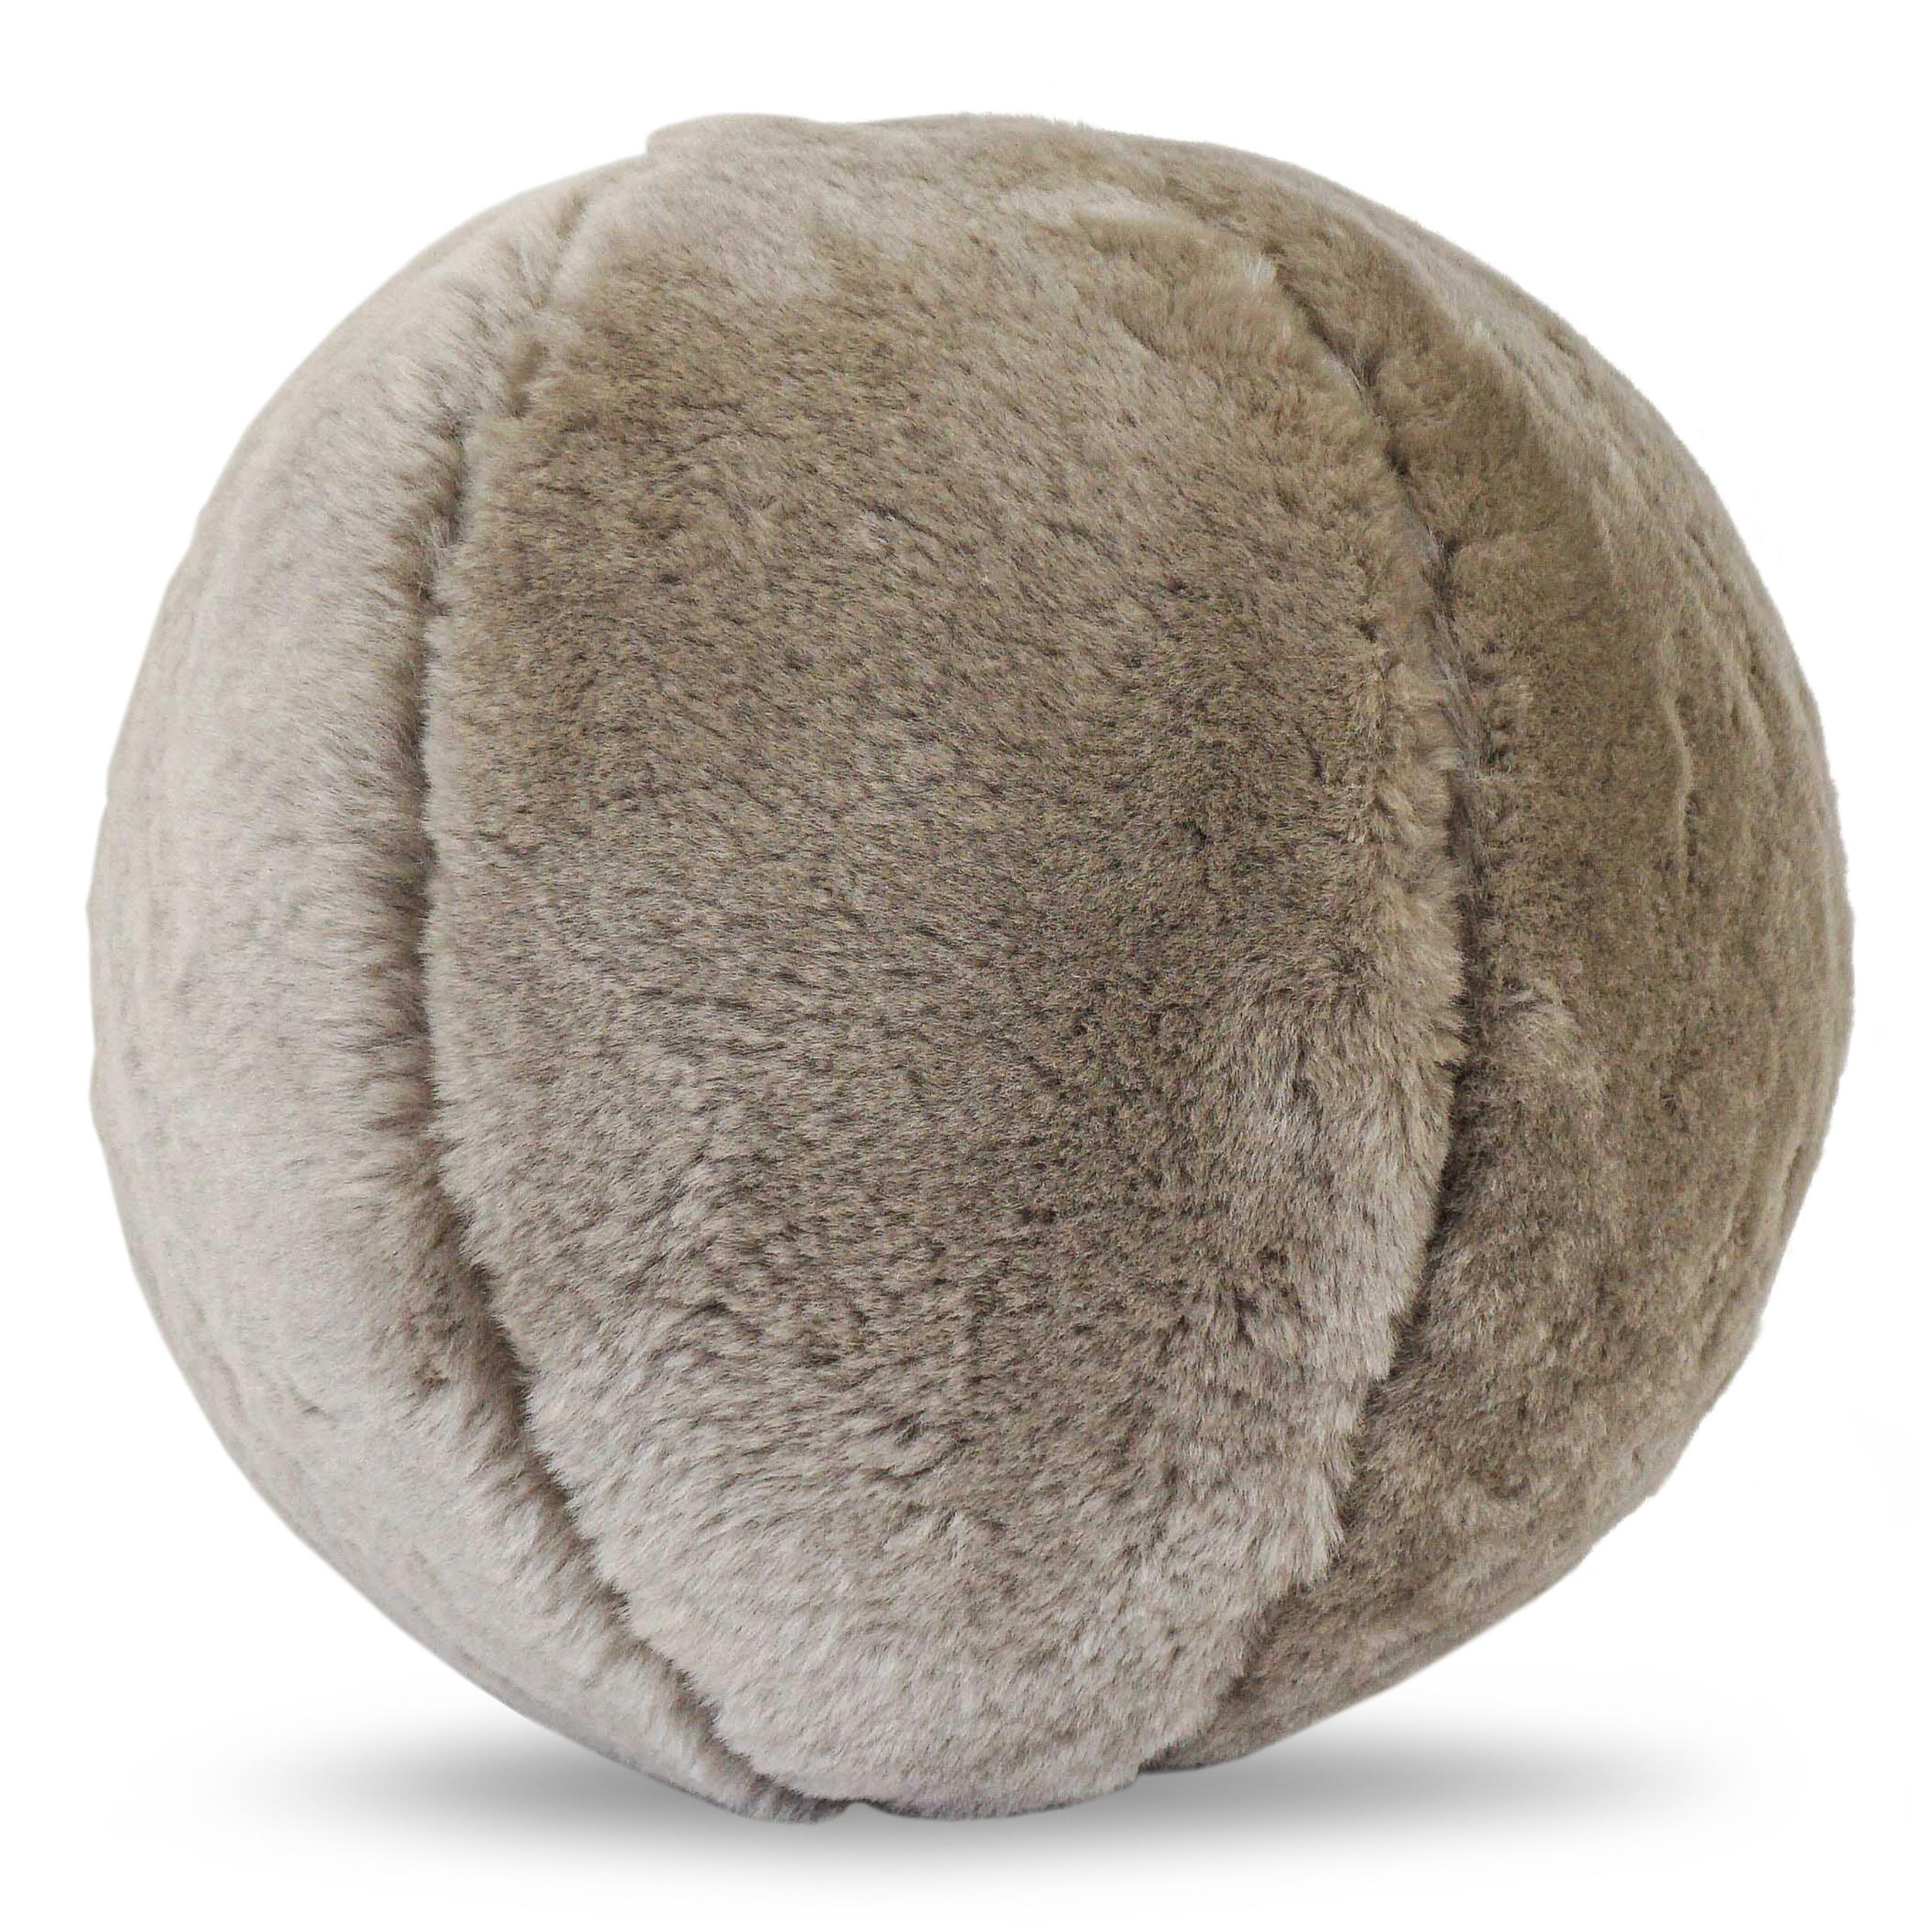 Oreiller boule rembourré de polyfill ferme, recouvert d'une confortable peau de mouton grise. La taille et le tissu peuvent être personnalisés. 

Mesures :
Extérieur : 13